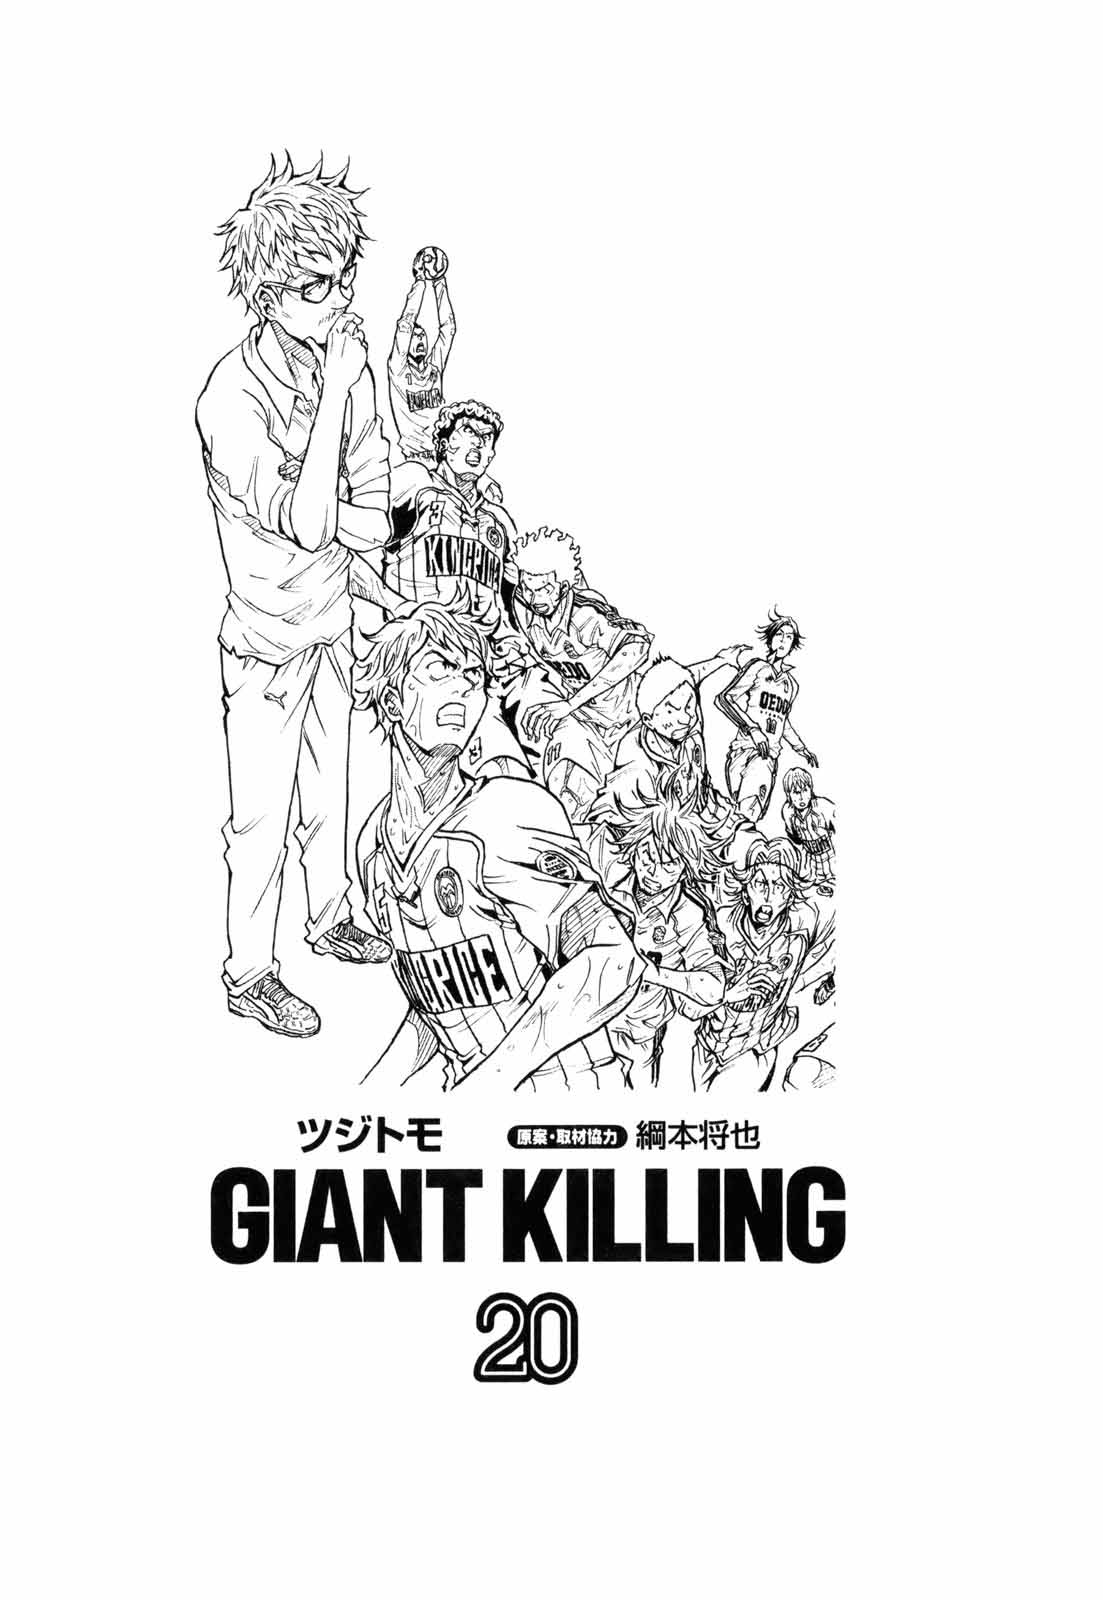 GIANT KILLING - ツジトモ 原案・取材協力/綱本将也 / 【#515】